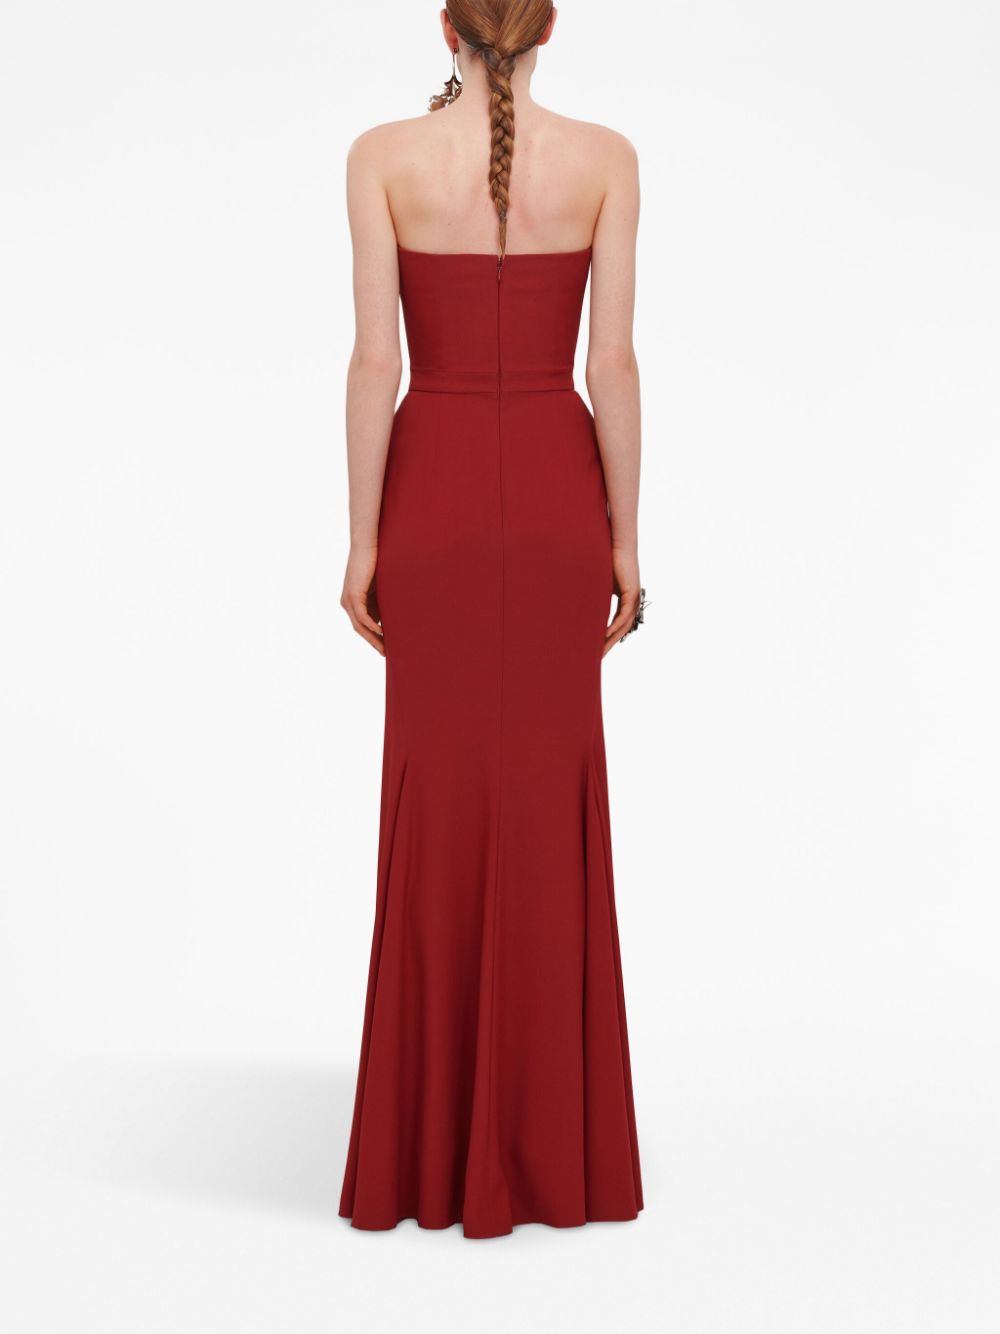 Đầm dài đính đá Red Peaked-Bust cho phụ nữ